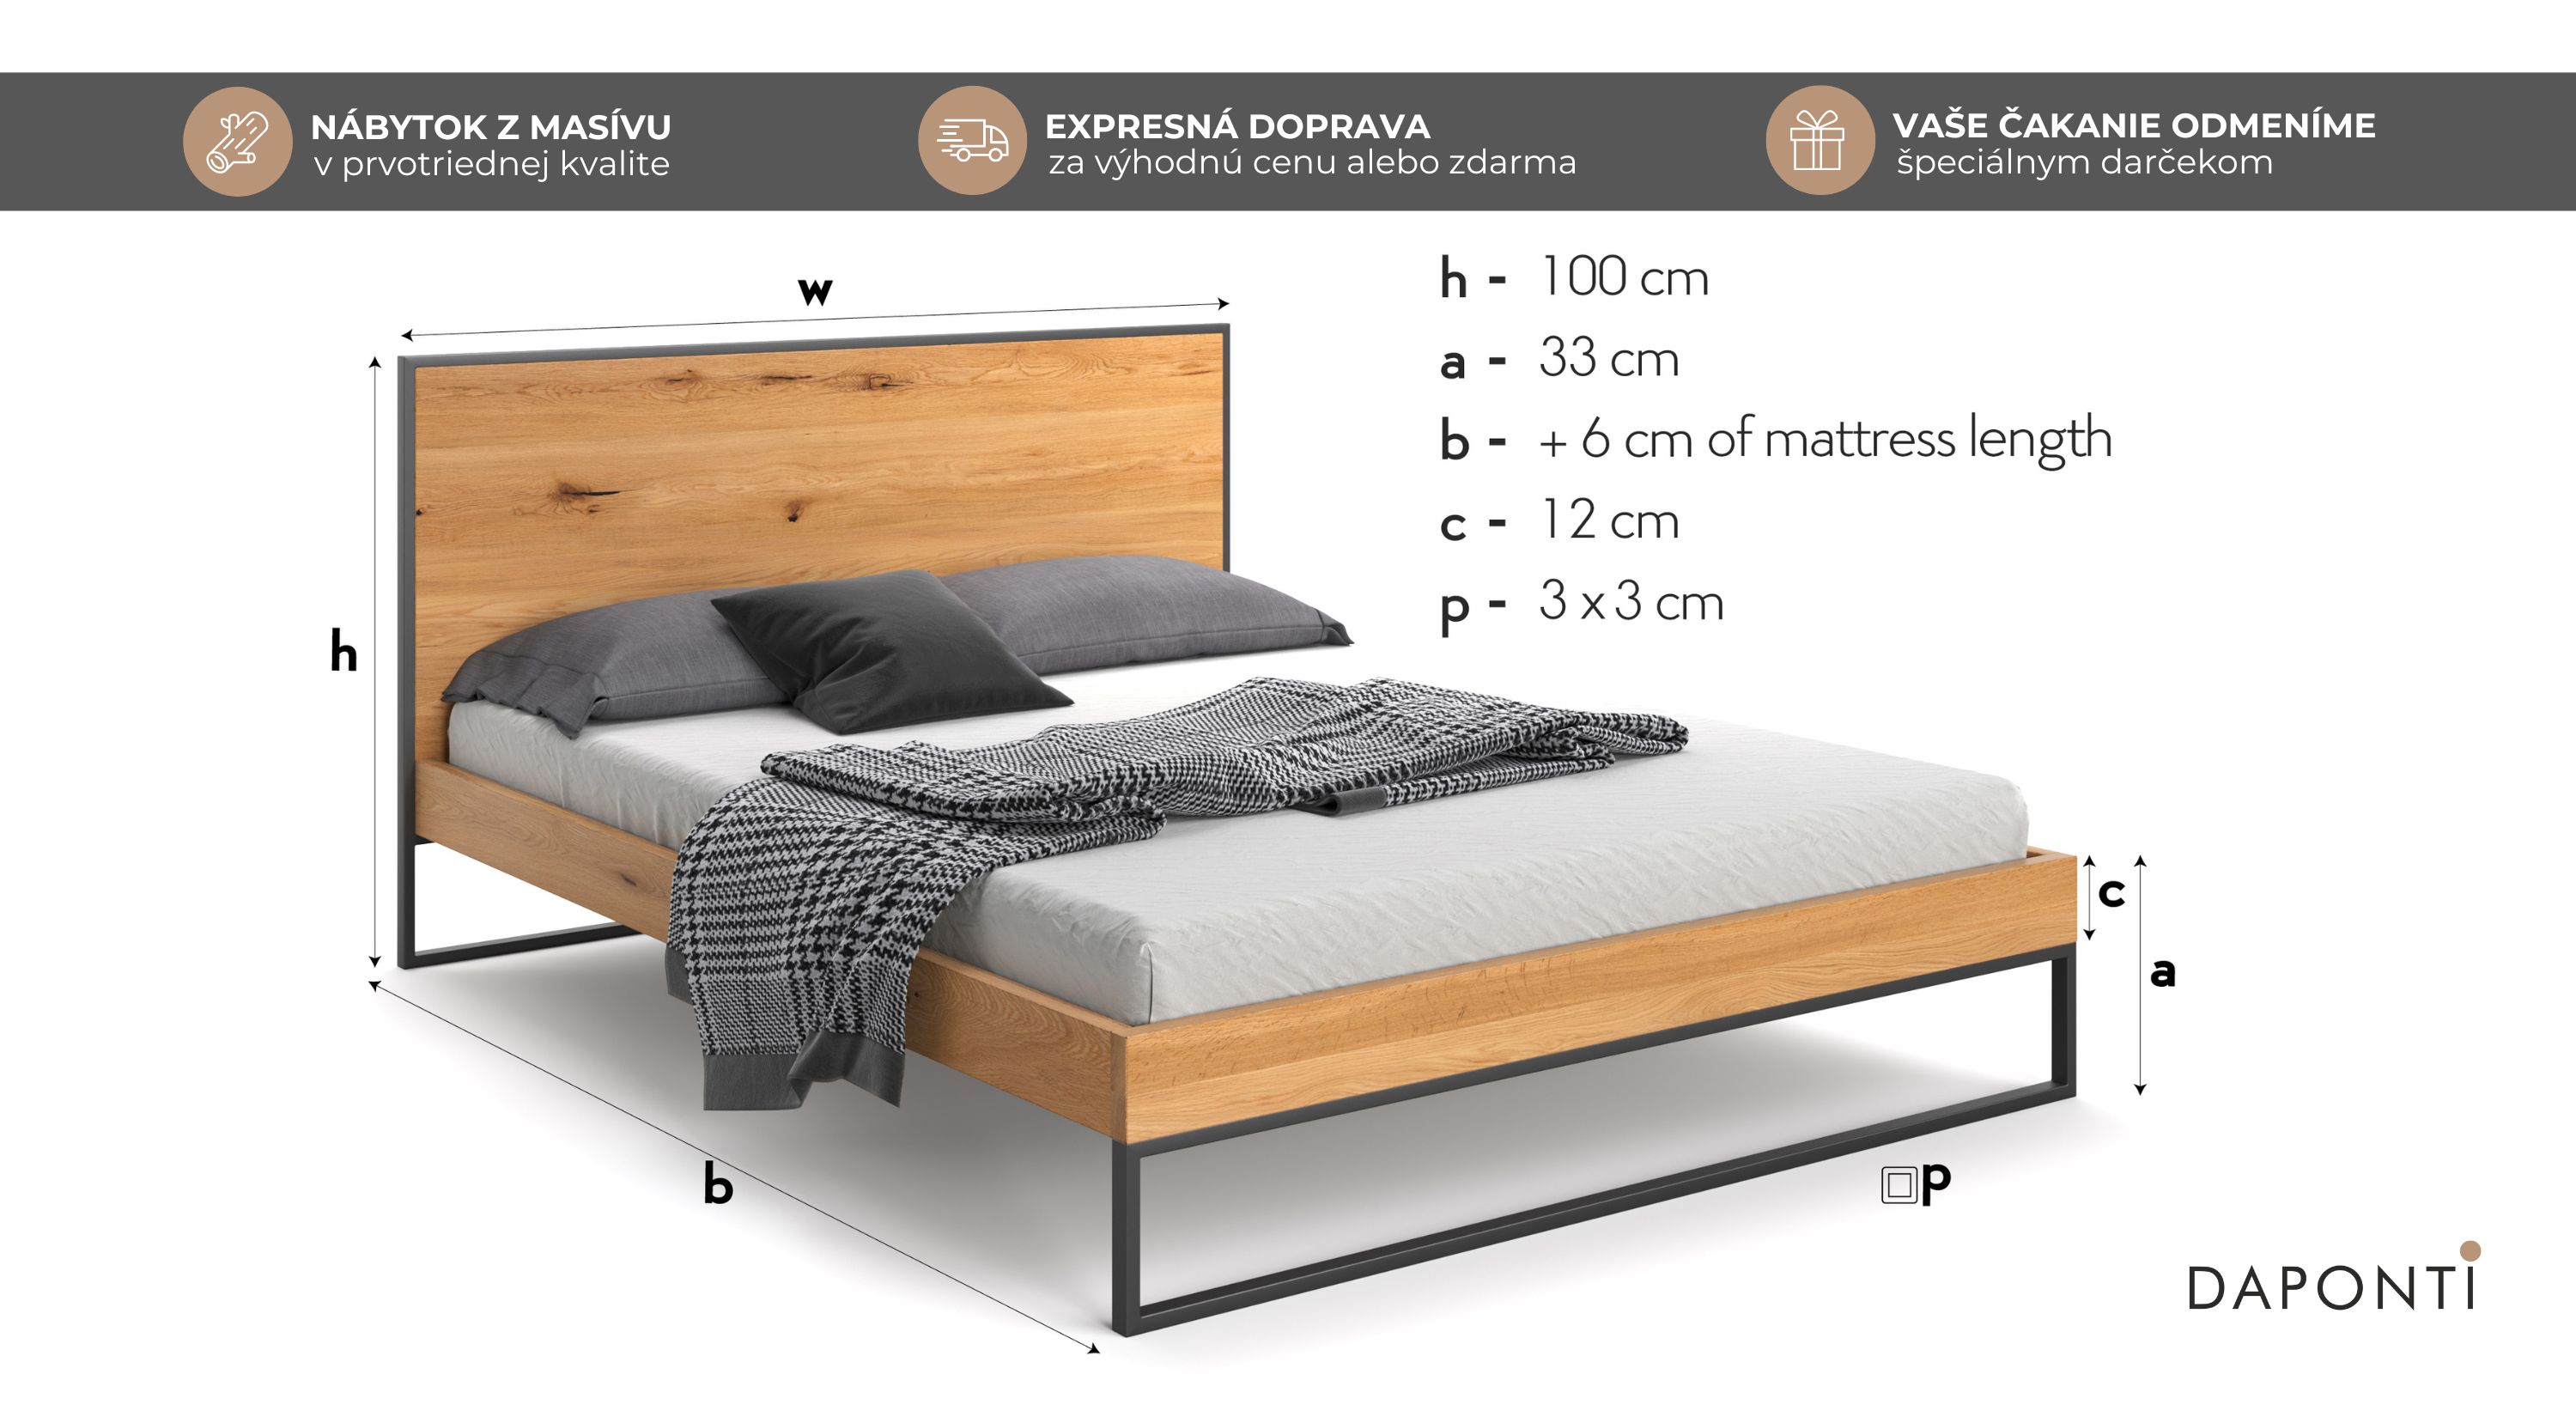 Masívna manželská postel z dubového dreva vo viacerých rozmeroch a kovovými doplnkami